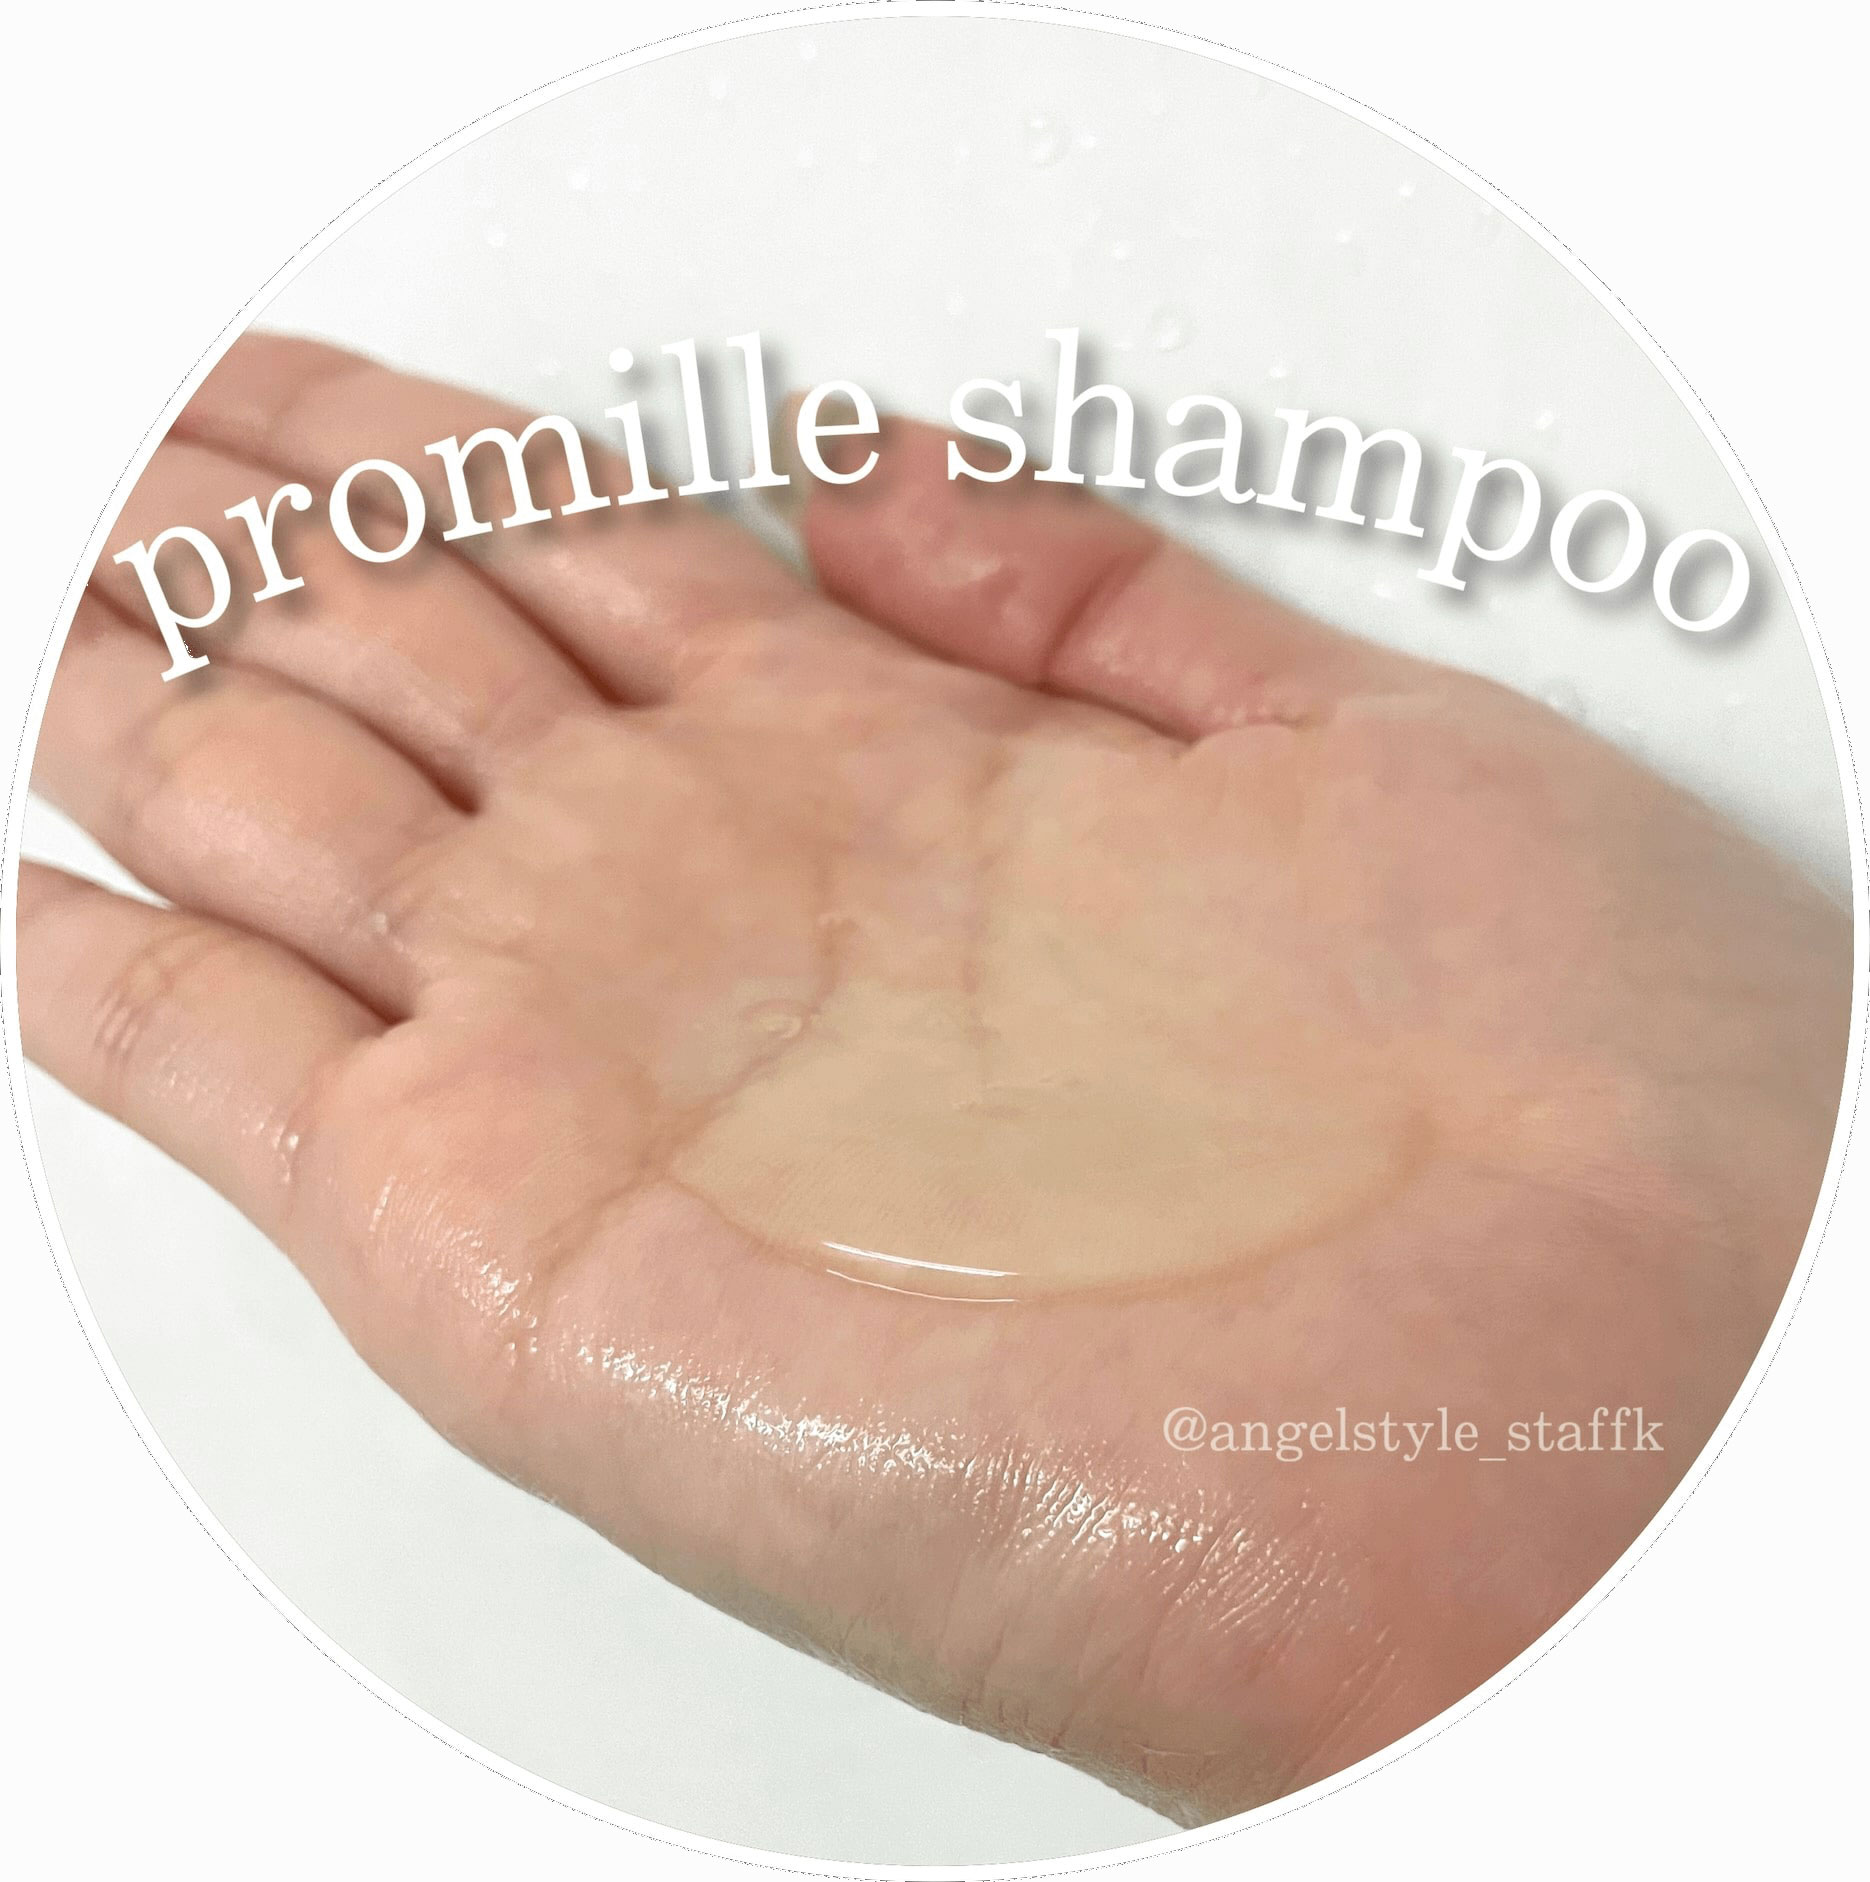 プロミルシャンプー Promille shampoo (200ml) さらっとしたジェルシャンプー